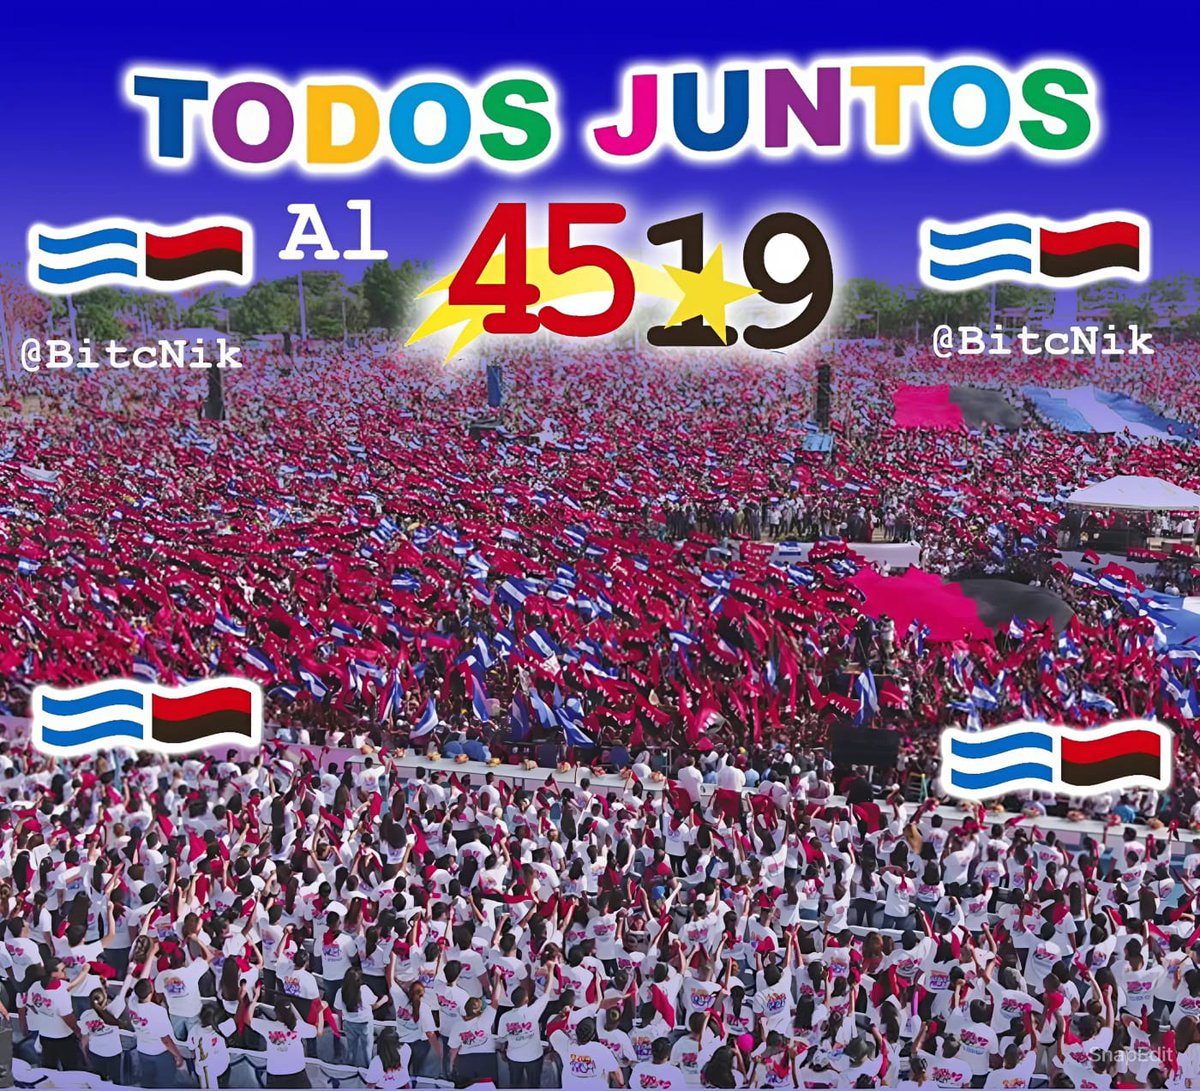 🇳🇮❤🖤 #Nicaragua #TodosJuntosAl4519 #SoberaníaYDignidadNacional Siempre Más Allá... #TropaSandinista